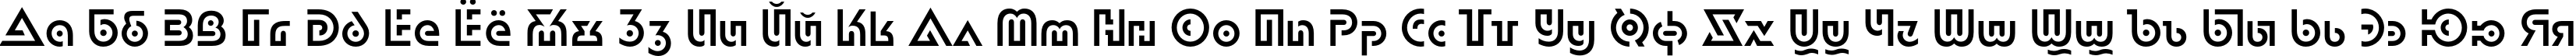 Пример написания русского алфавита шрифтом DublonC